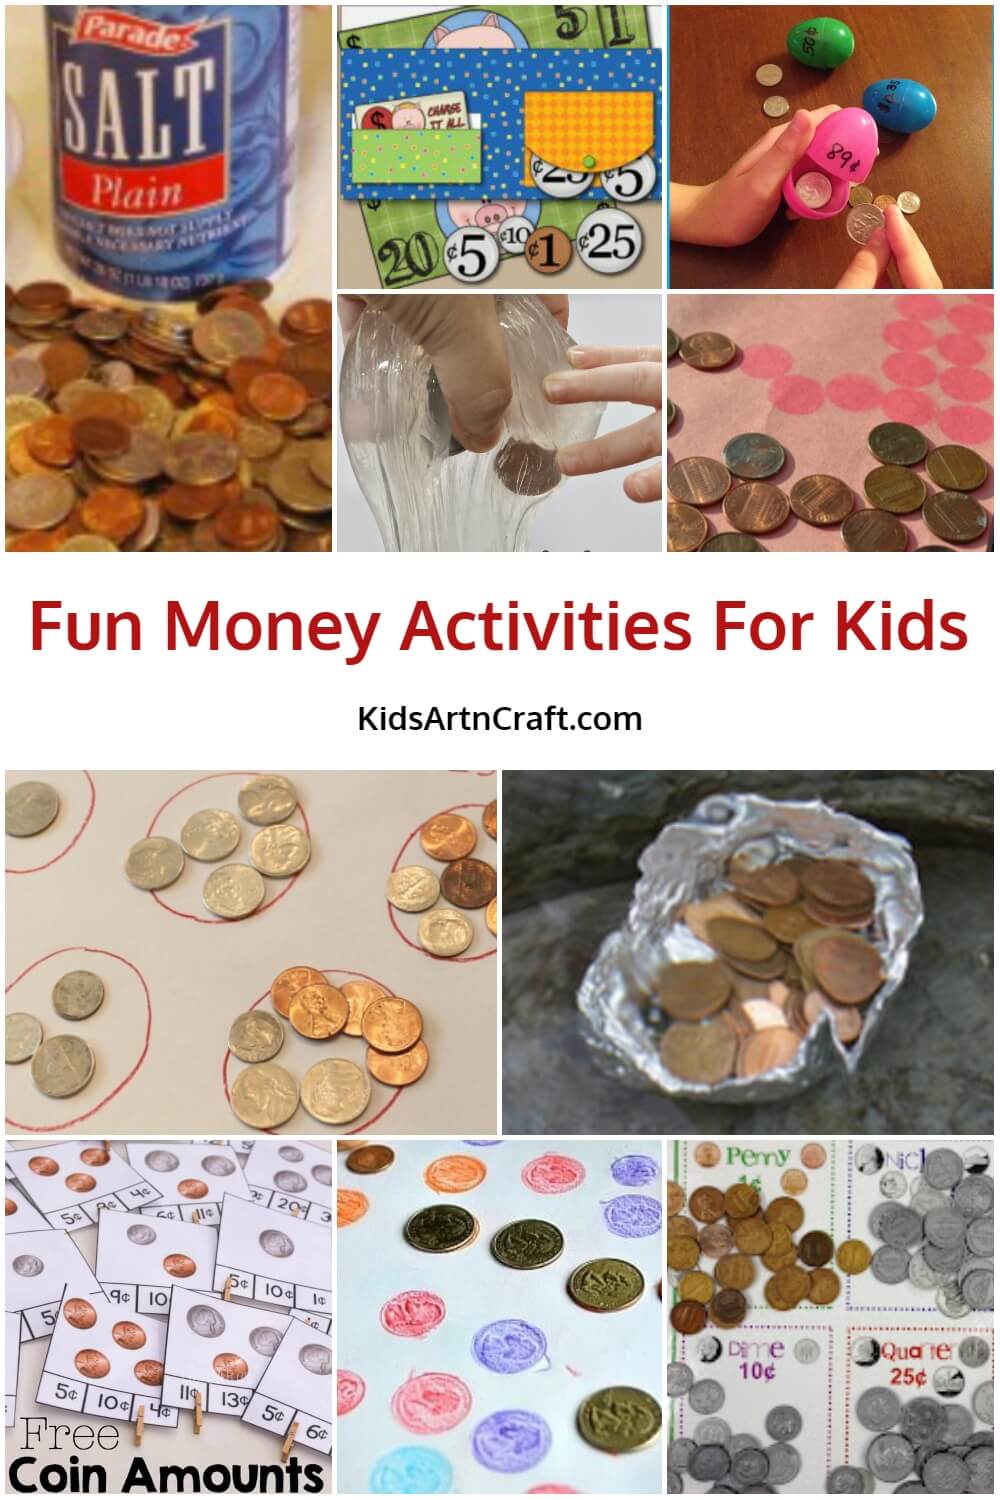  Fun Money Activities For Kids